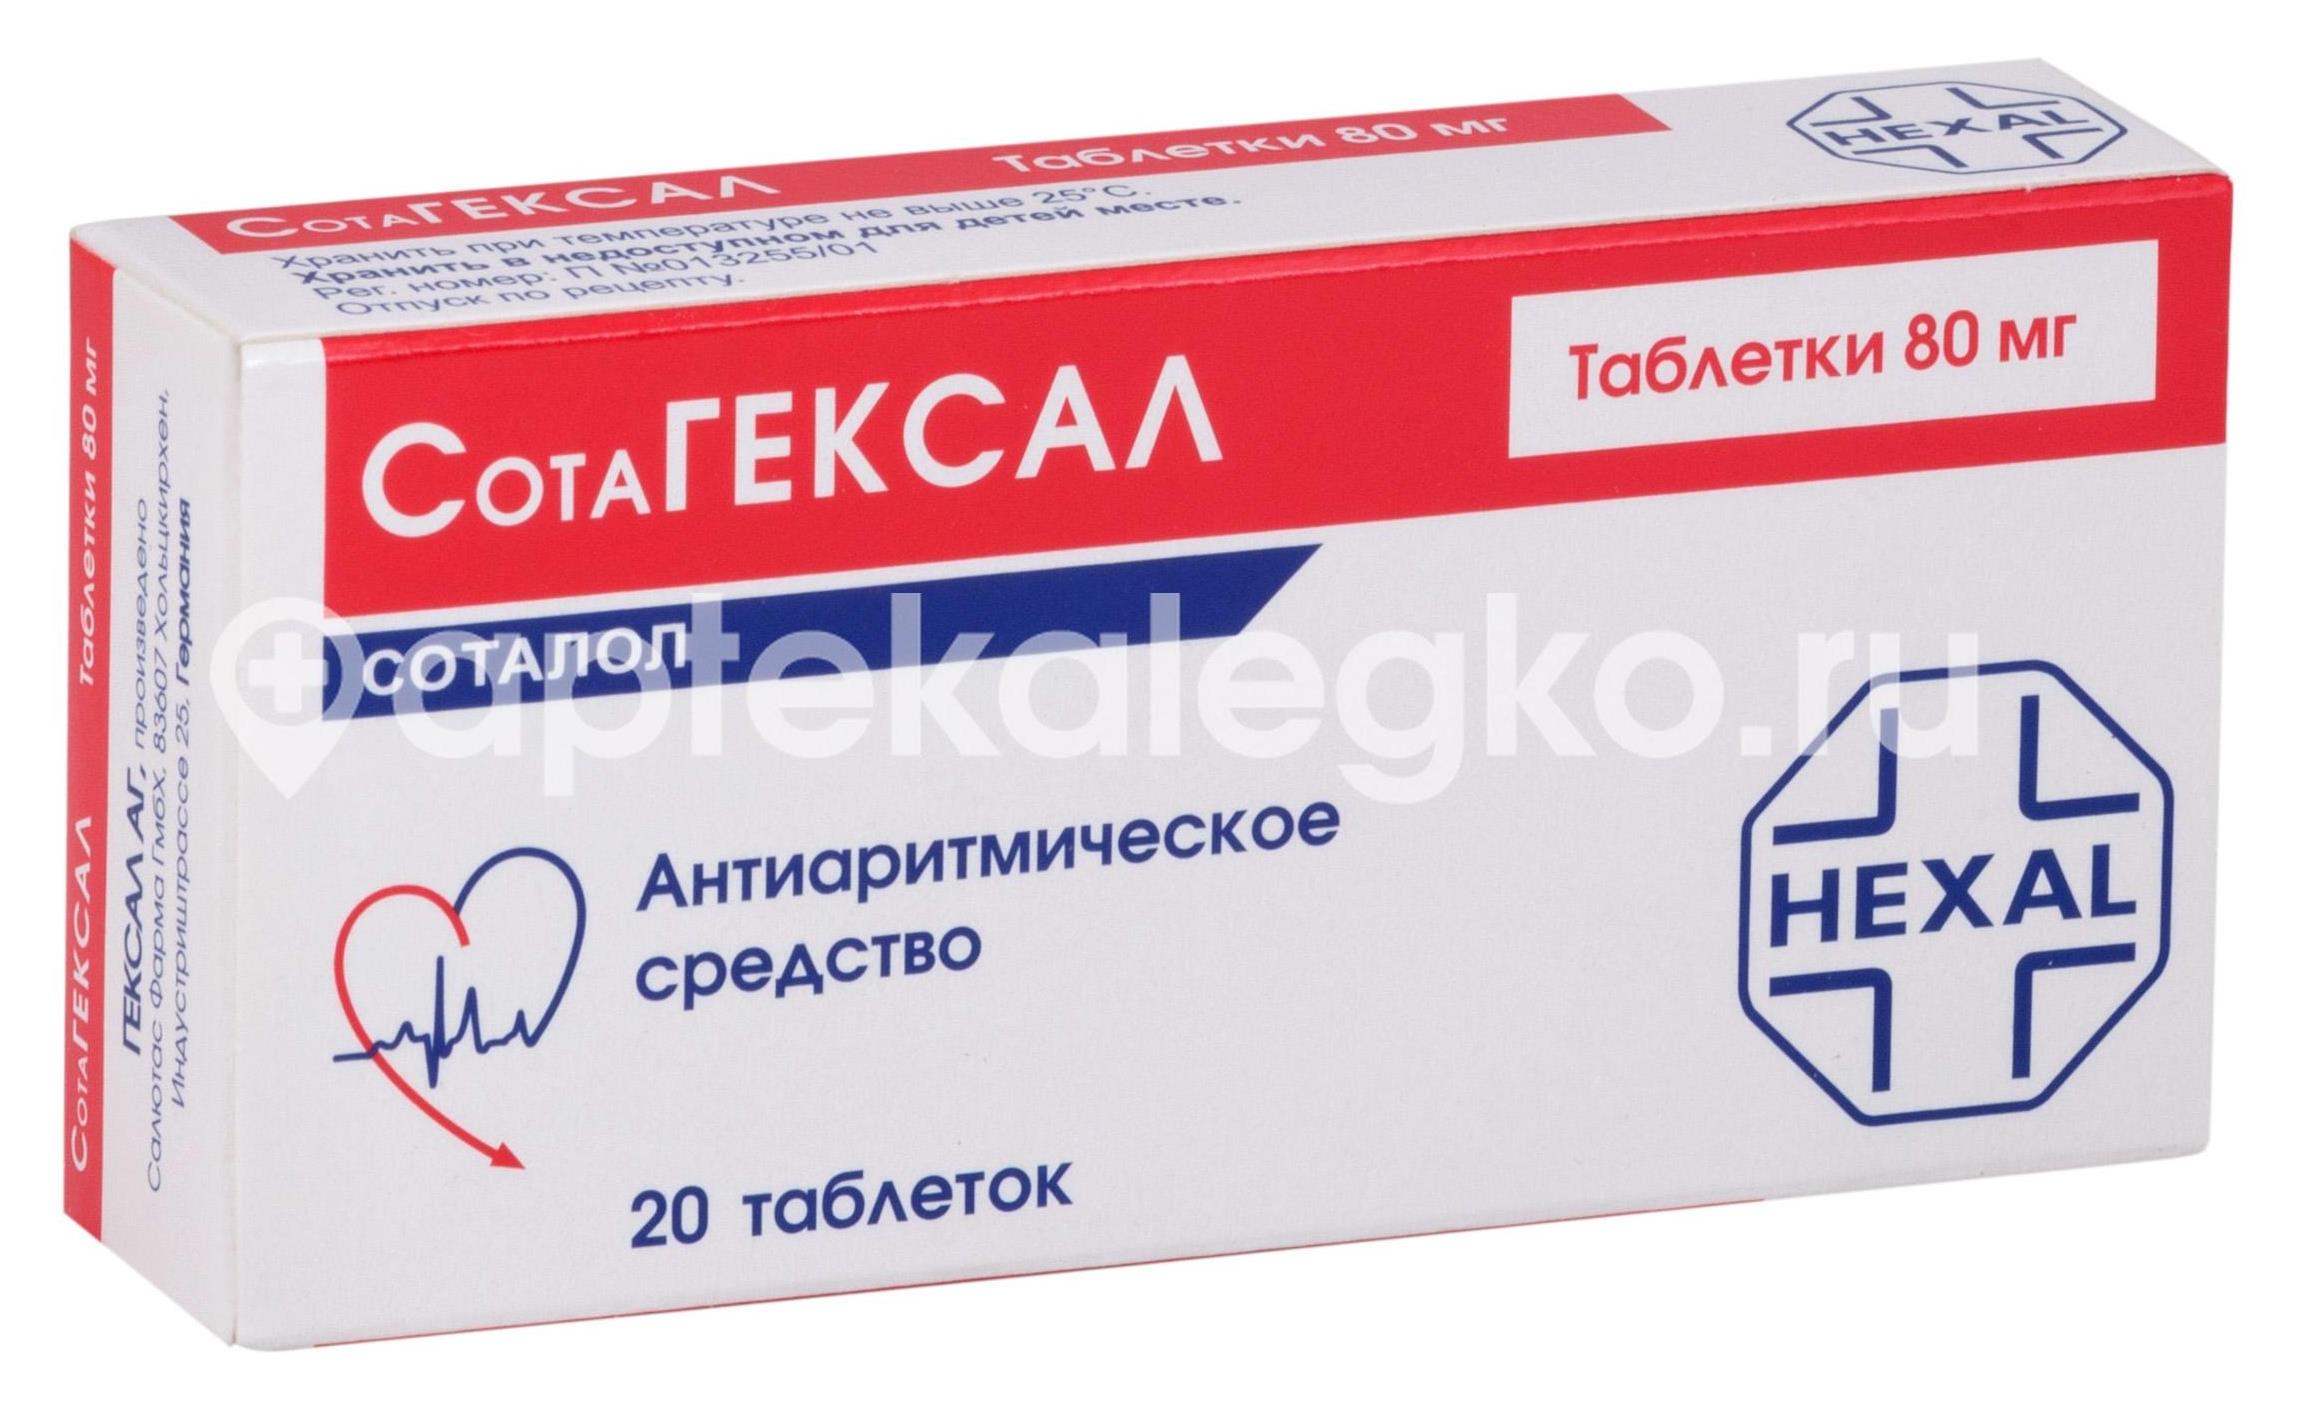 Аналог сотагексала в россии без побочных эффектов. Сотагексал 160 мг. Соталол 40. Hexal сотагексал. Сотагексал таблетки 160мг №20.